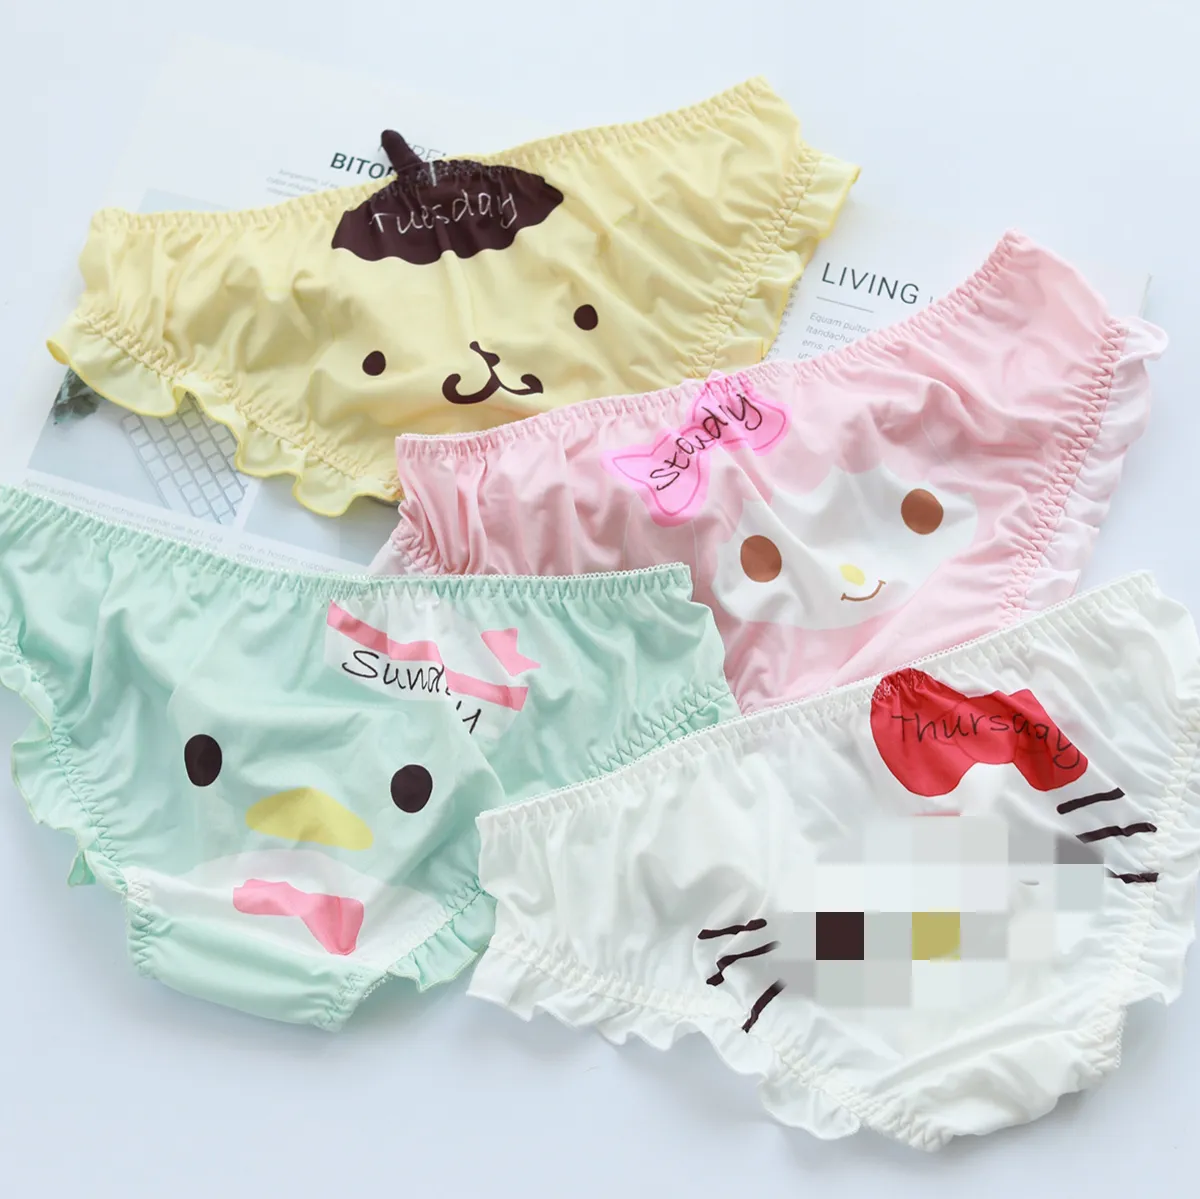 Ruunjoy Atacado De Alta Qualidade Sanrio Cuecas Bonito Kuromi KT Melody Underwears Preço De Fábrica Meninas Adolescentes Calcinhas